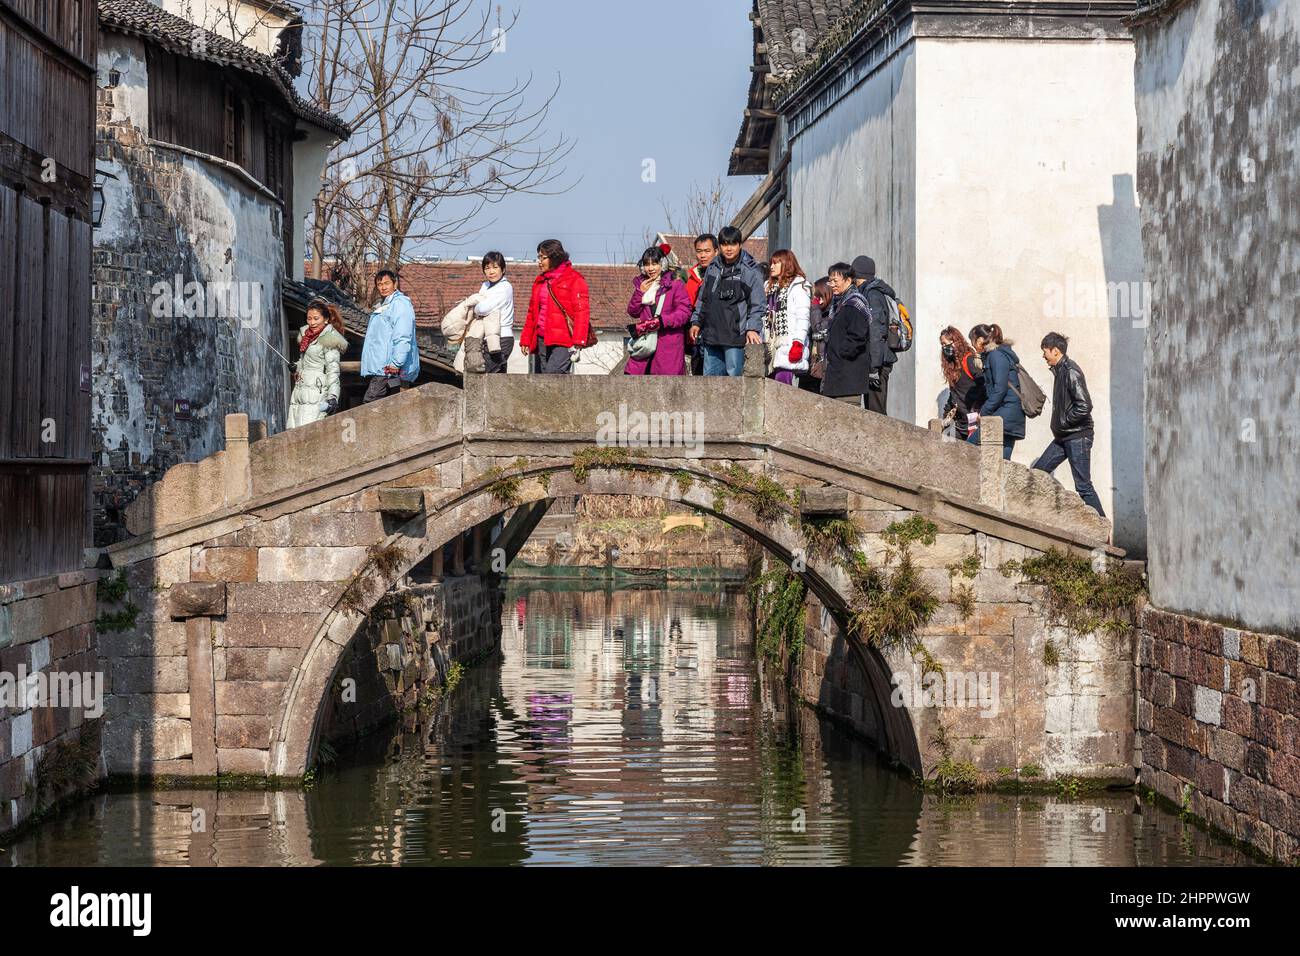 Groupe de touristes traversant un pont en pierre enjambant un canal dans le village aquatique de Wenzhou, en Chine Banque D'Images